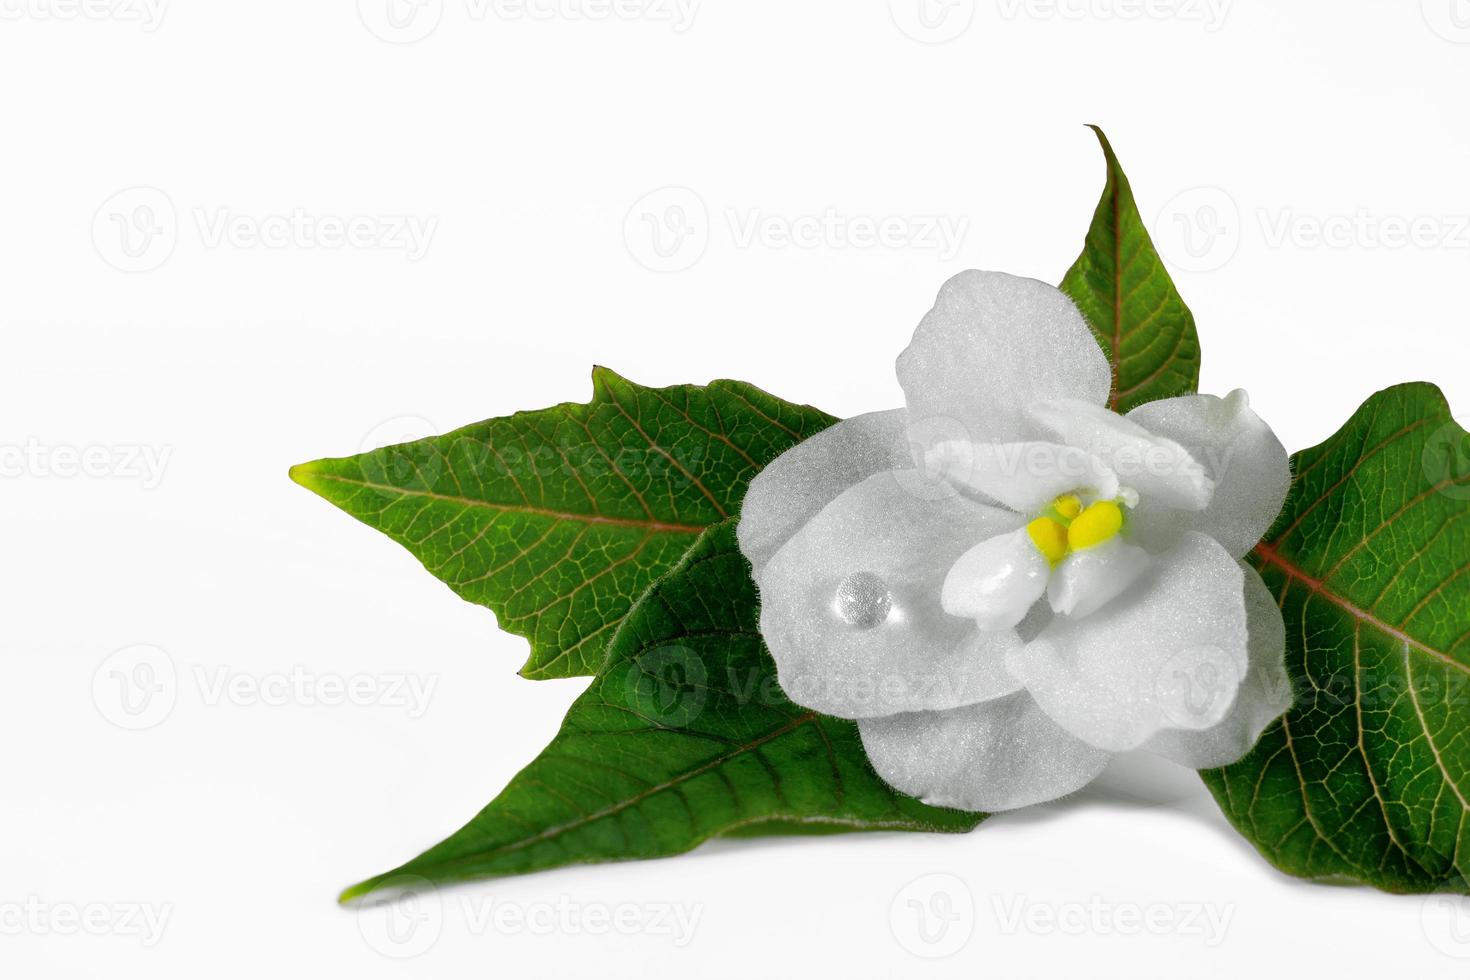 närbild av en vit blomma med grön löv och en daggdroppe isolerat på en vit bakgrund. makro foto